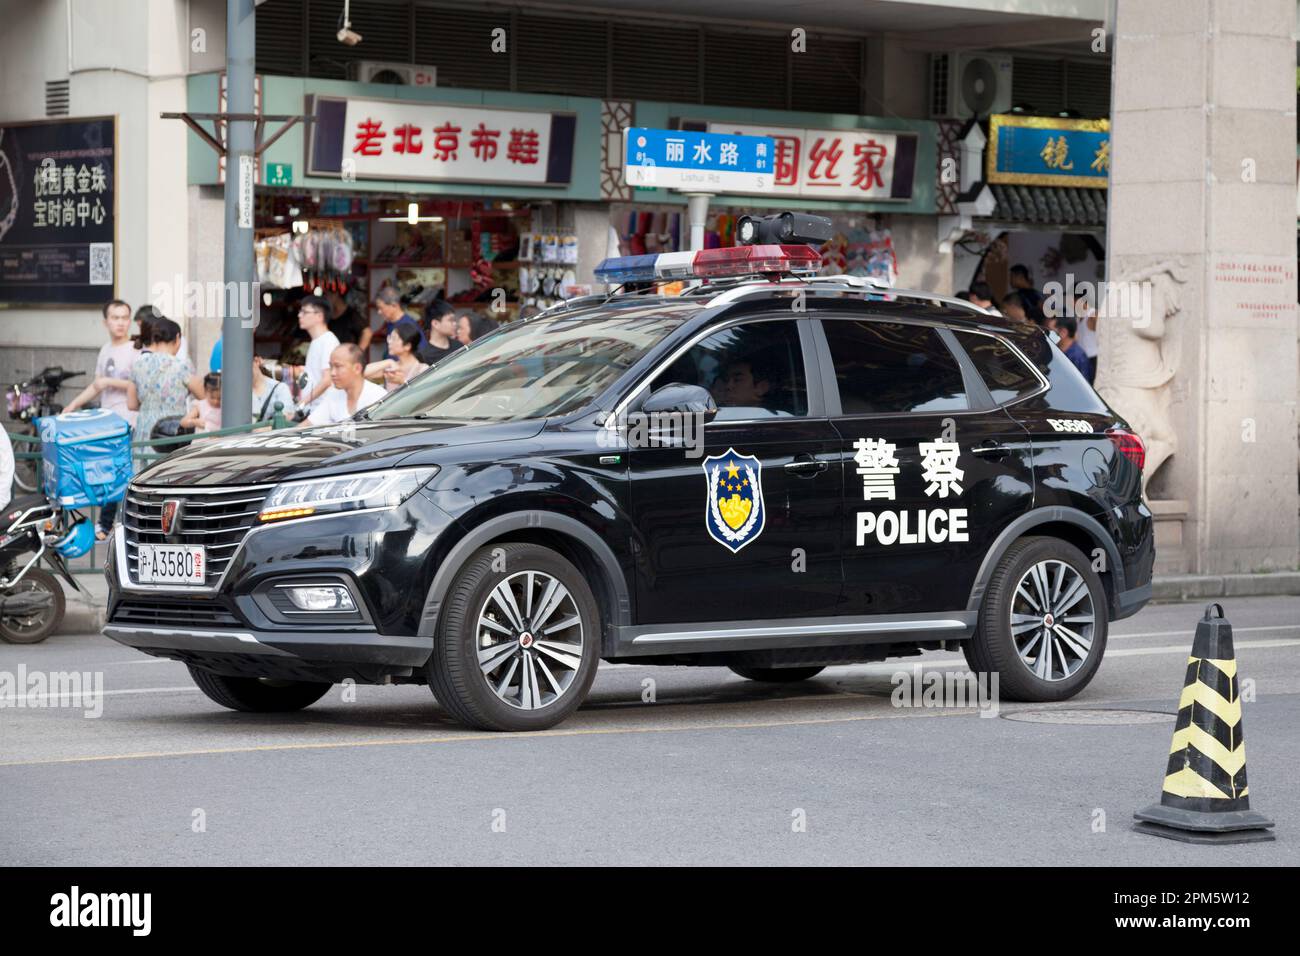 Shanghai, Chine - 10 août 2018: La police SUV garée à l'extérieur du marché de Yuyuan, le lieu touristique populaire de Shanghai. Banque D'Images